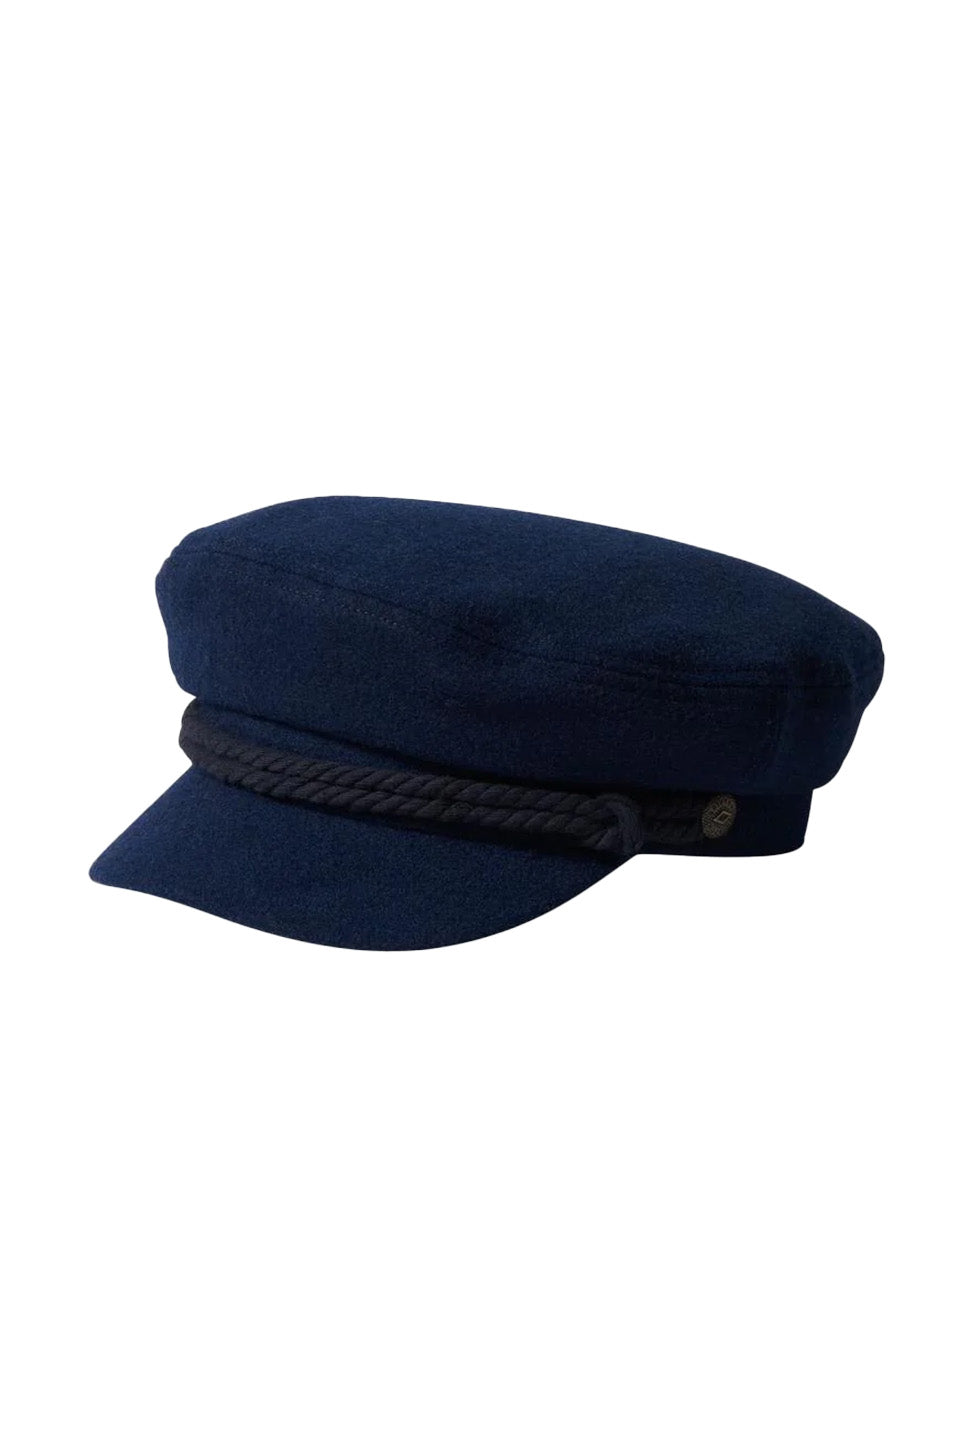 FIDDLER CAP